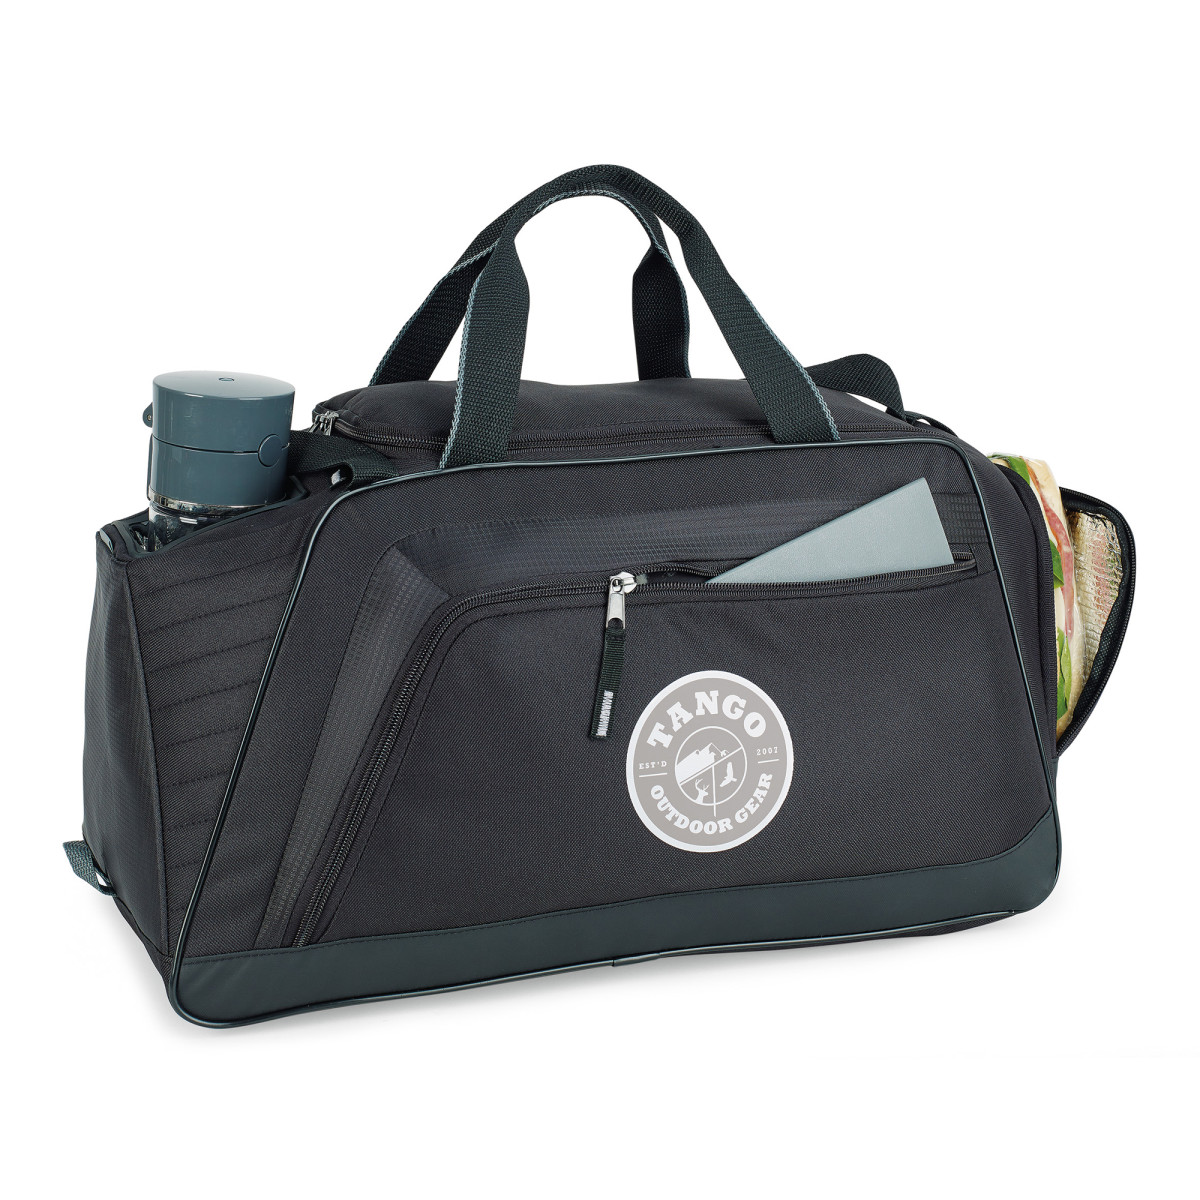 Gemline 4270 - Spartan Sport Bag